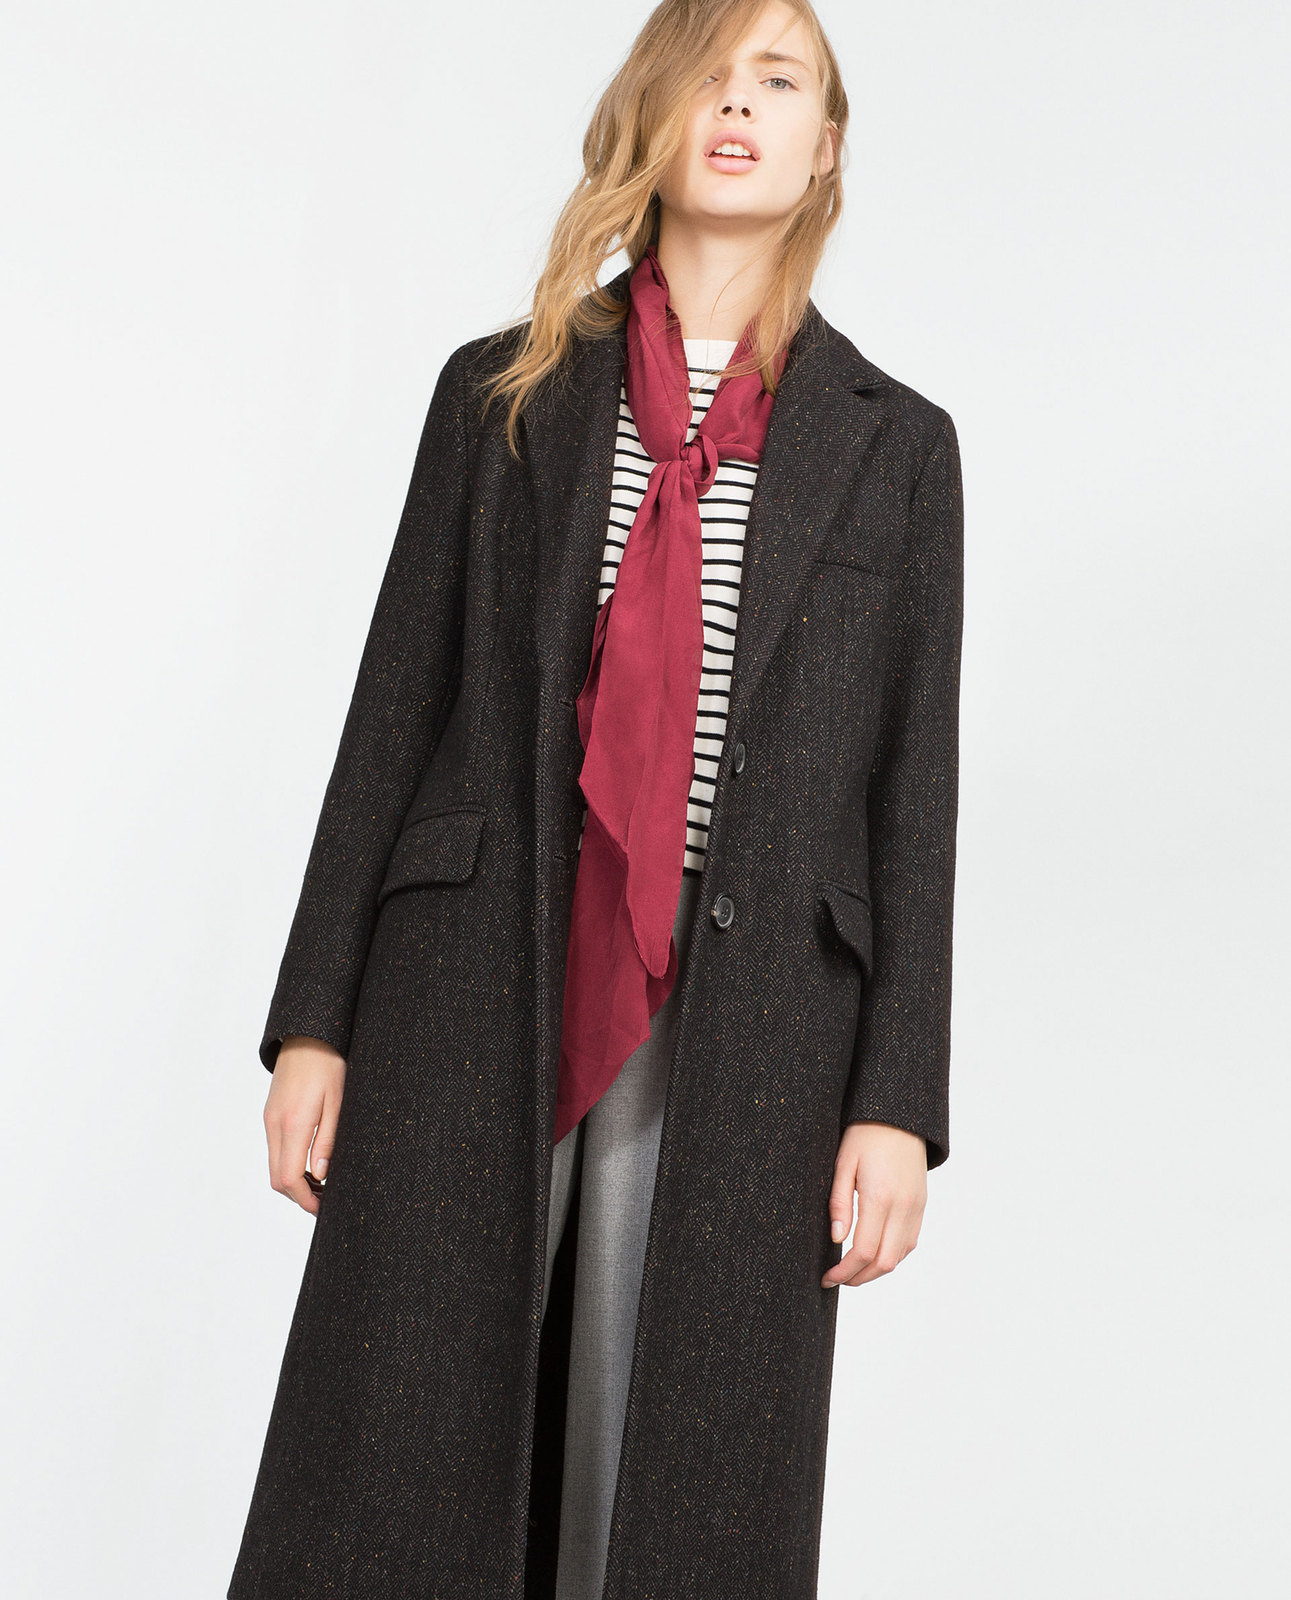 Zara egyenes szabású női kabát 2015.10.15 fotója